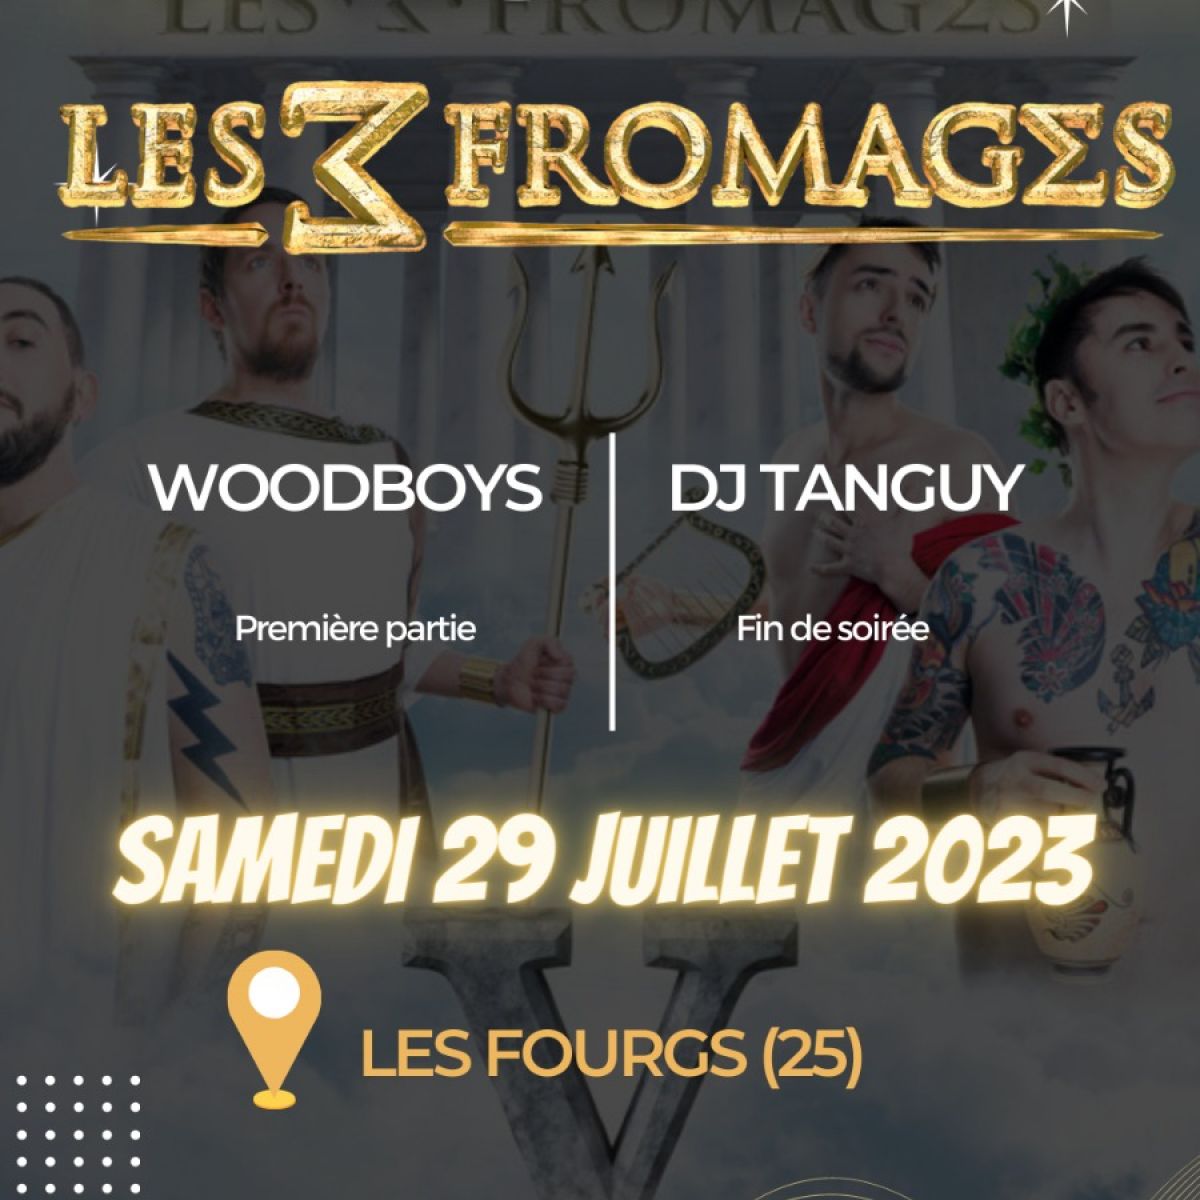 LES 3 FROMAGES // WOODBOYS - 51° Fête du Sapin Président, Les Fourgs